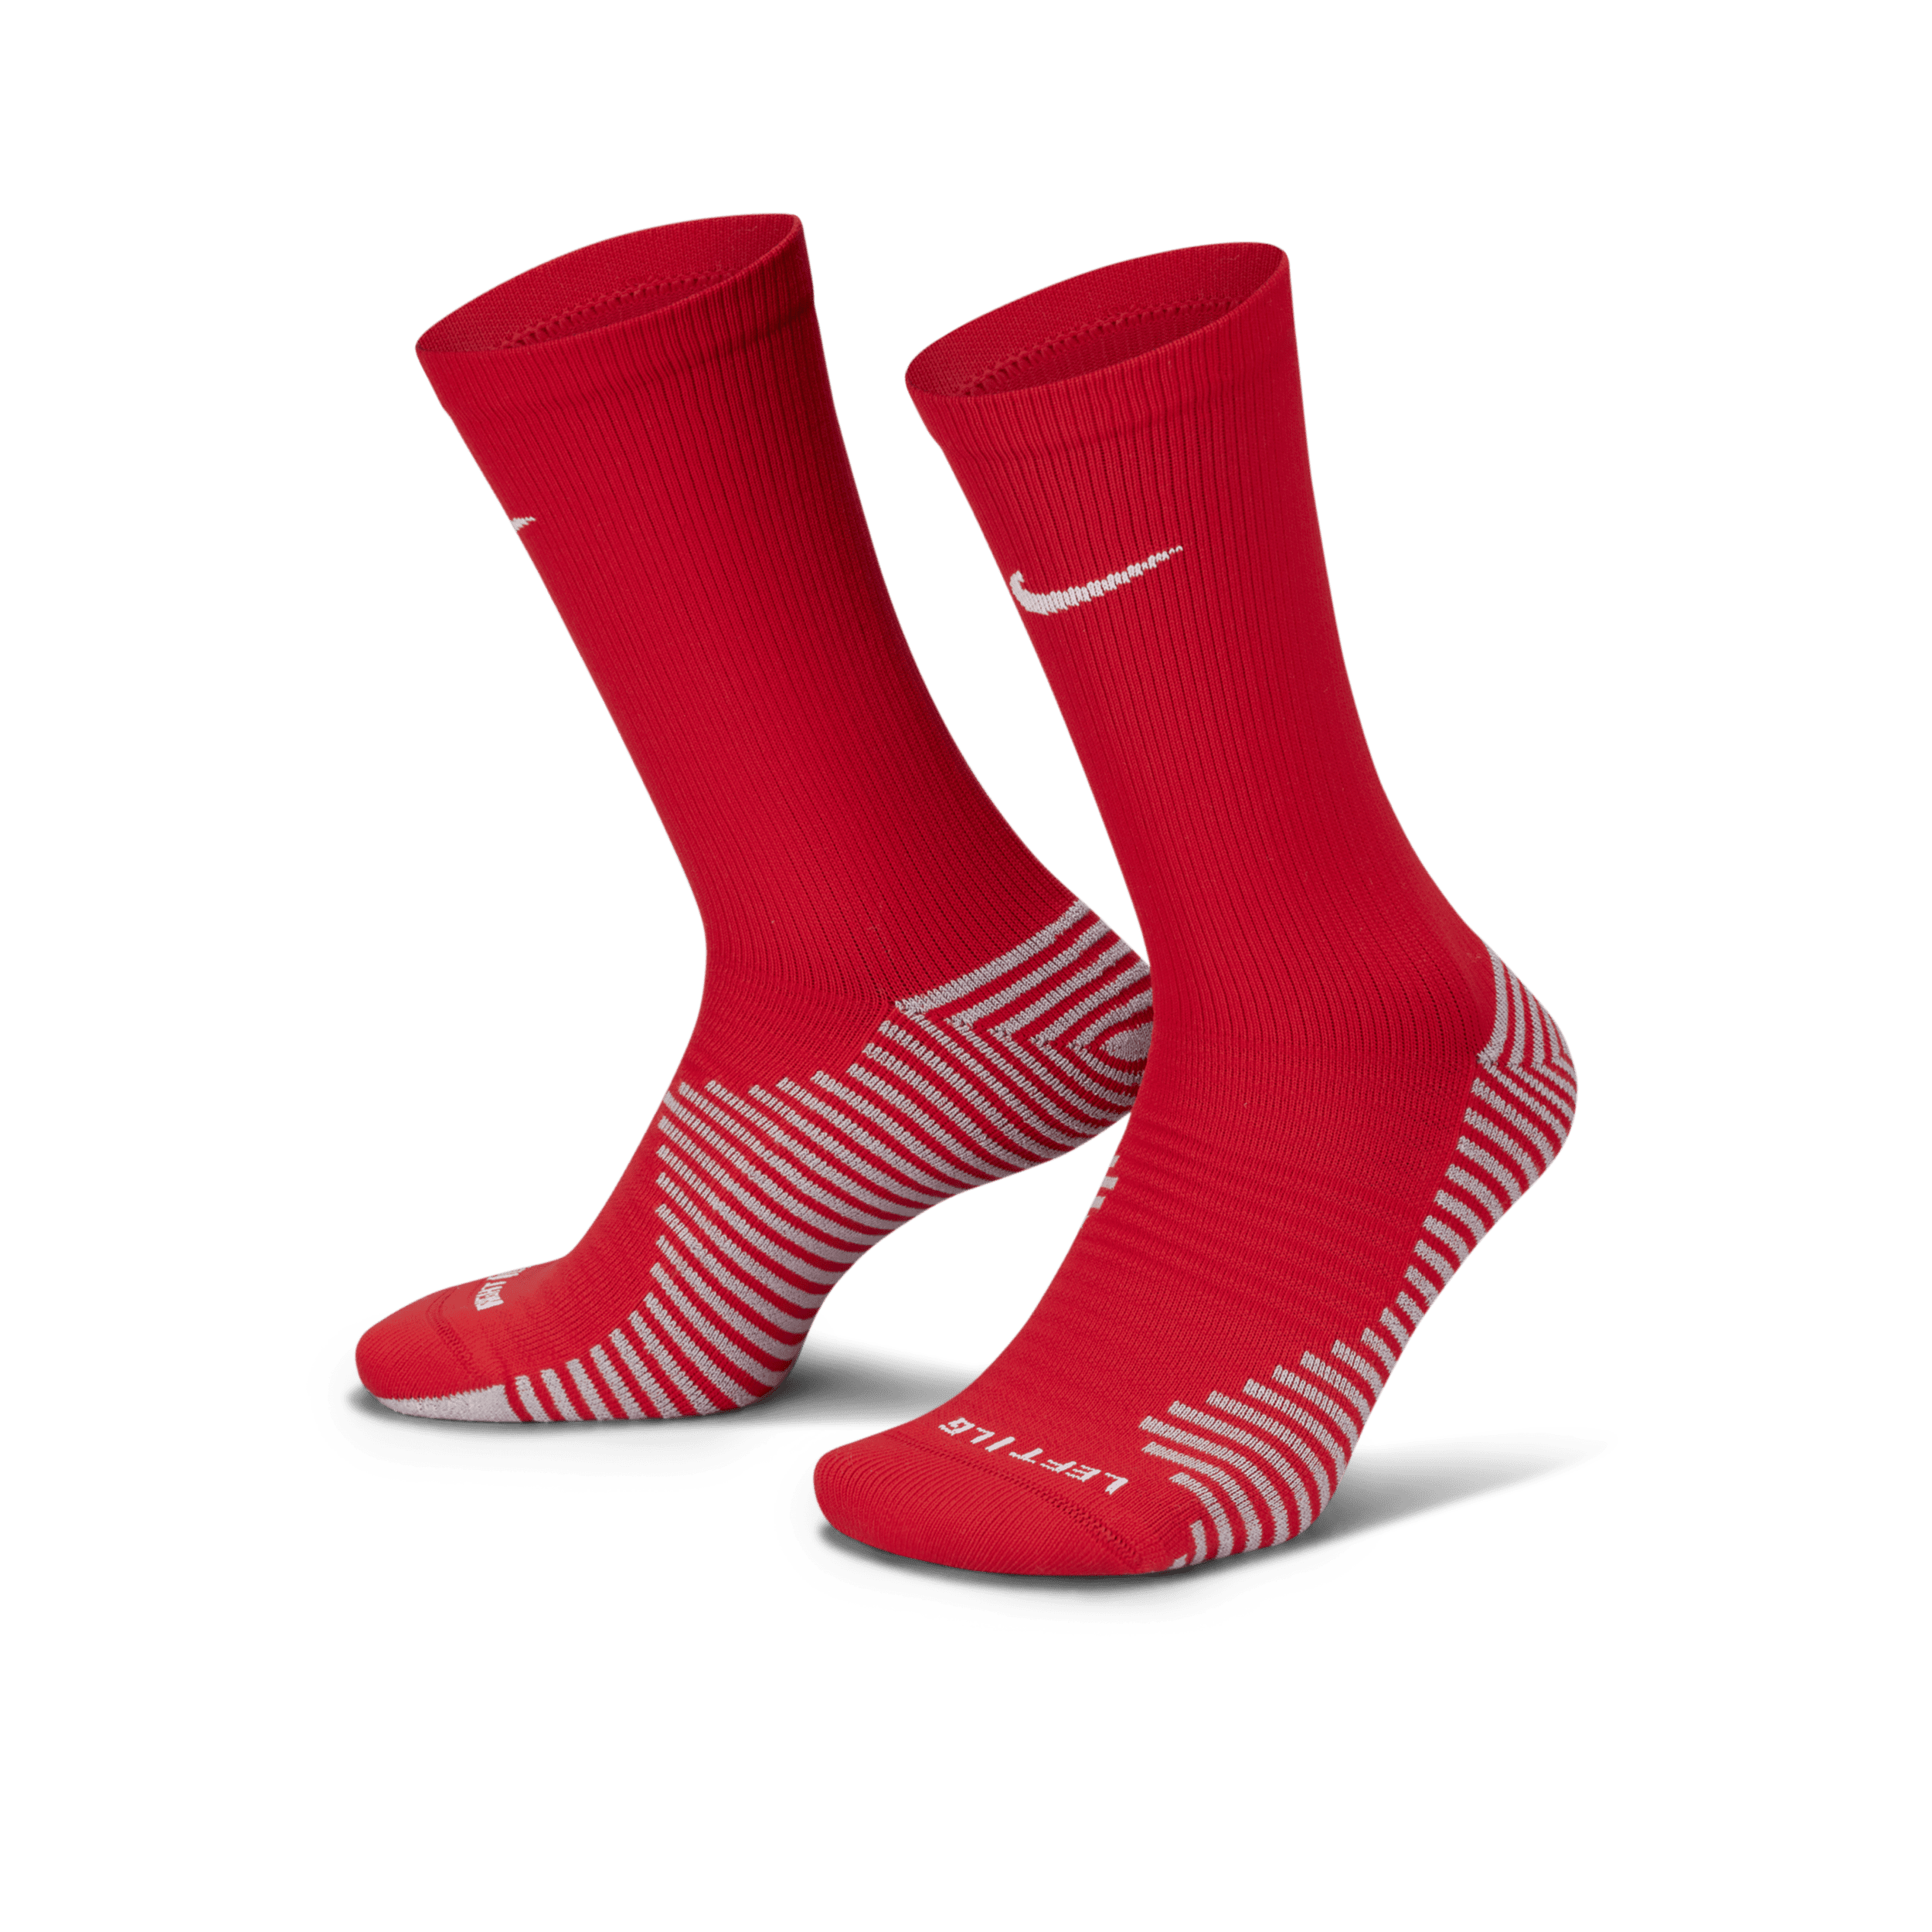 Calze da calcio Nike Strike di media lunghezza - Rosso